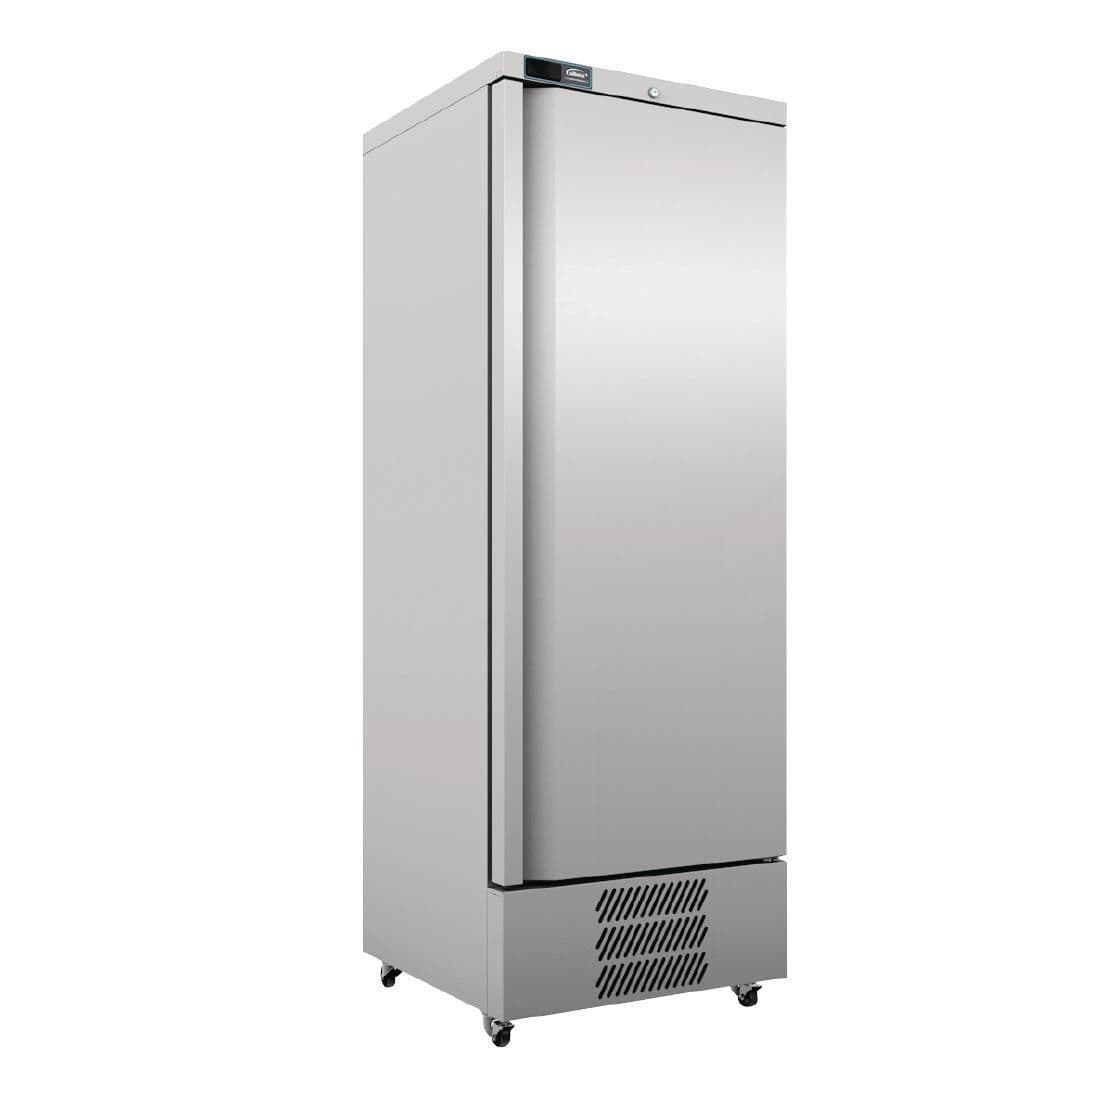 FD353 Williams Jade Undermount Freezer 410Ltr LJ400U-SA JD Catering Equipment Solutions Ltd